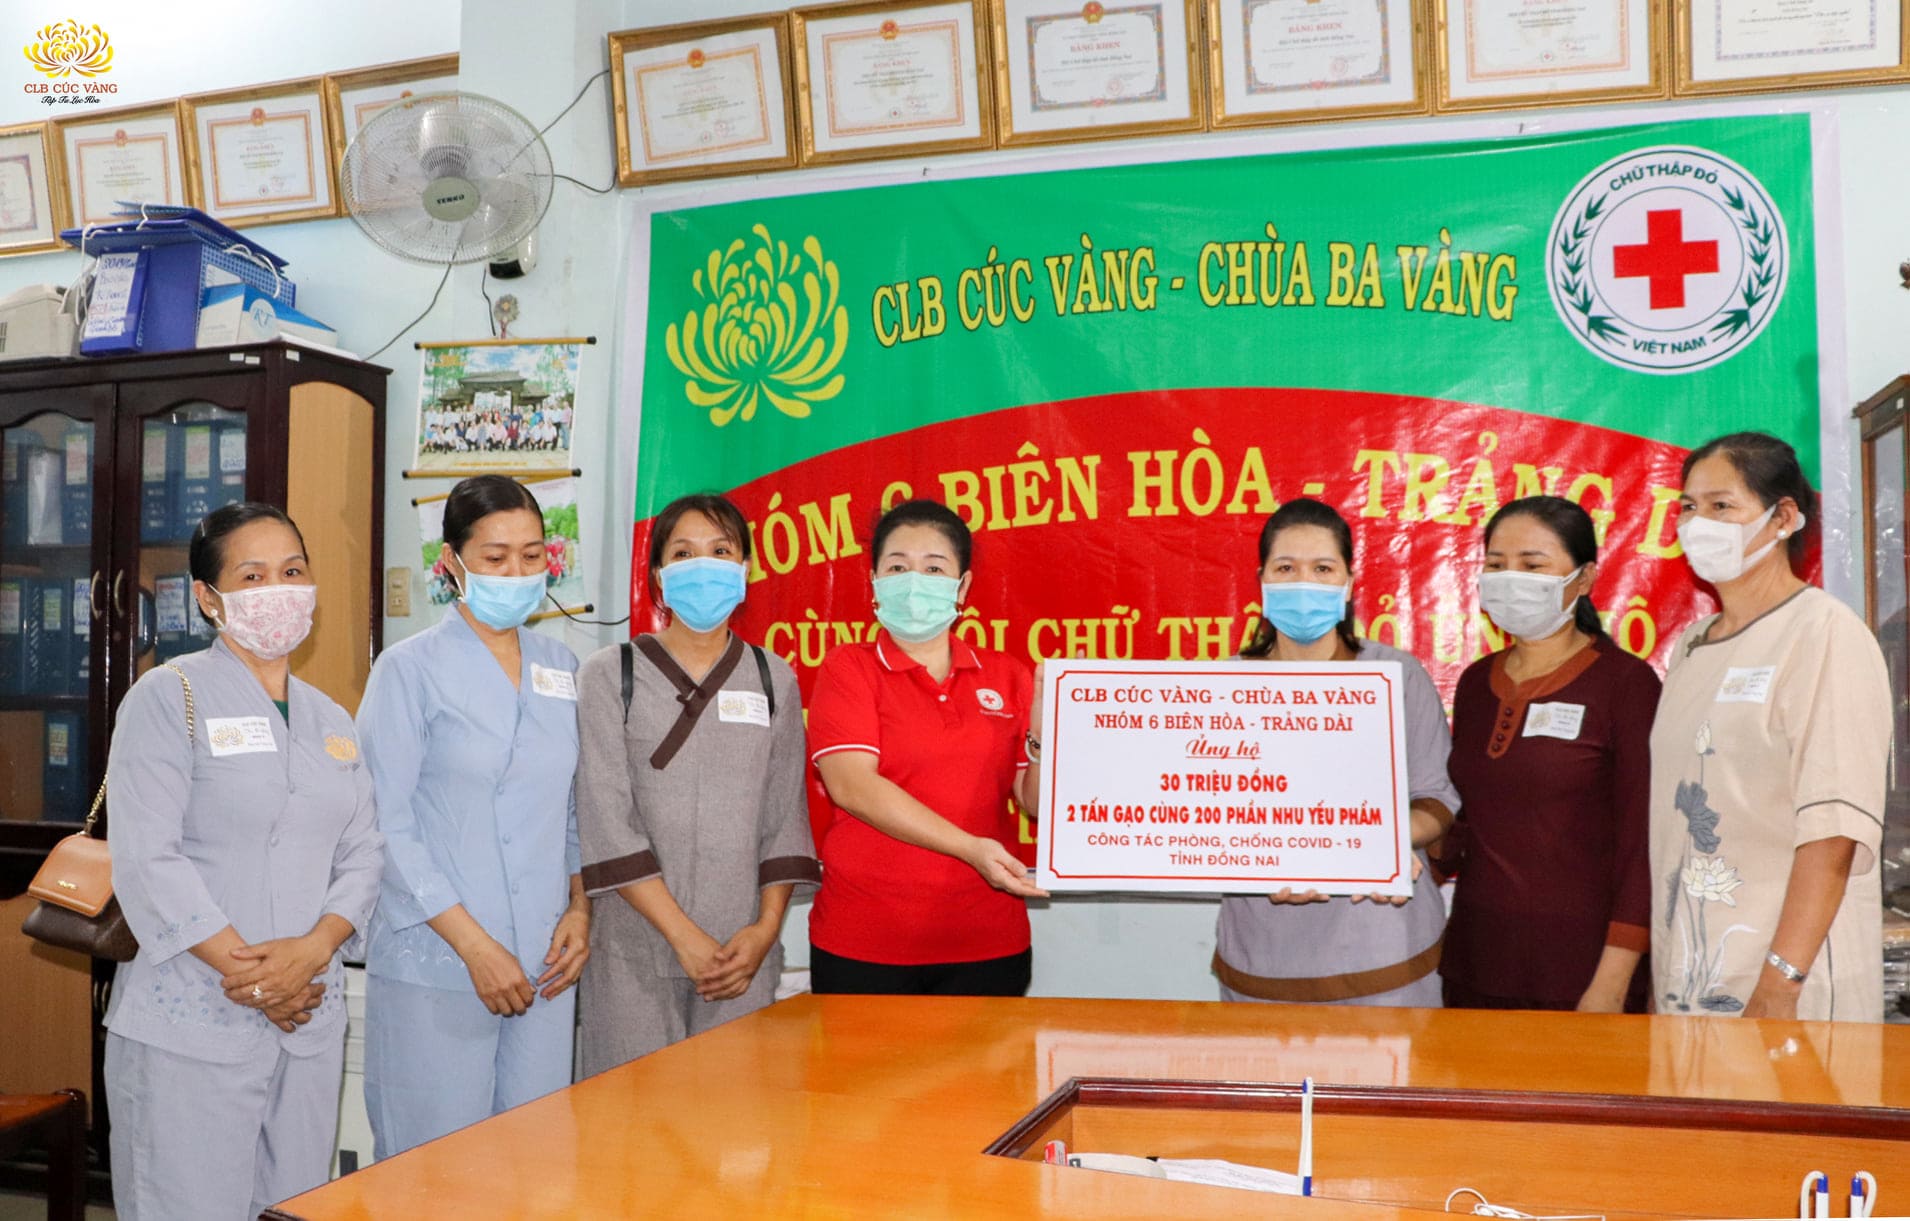 Phật tử trong CLB Cúc Vàng - Tập Tu Lục Hòa cùng Hội Chữ thập đổ ủng hộ công tác phòng, chống dịch tại tỉnh Đồng Nai 30 triệu đồng, 2 tấn gạo cùng 200 suất quà